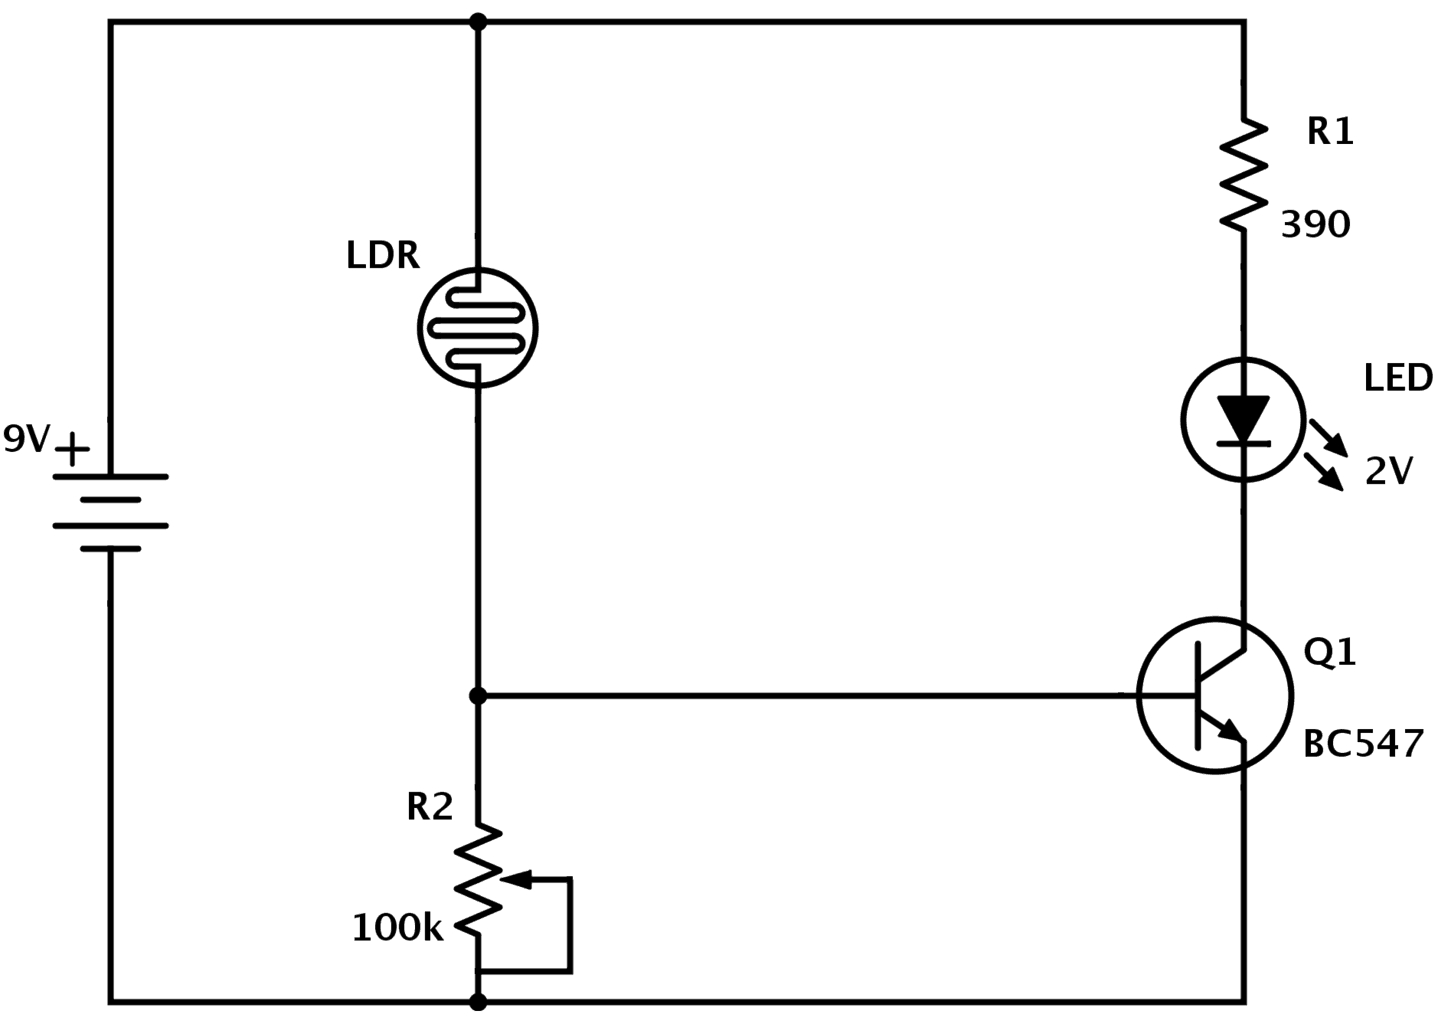 Basic Wiring Diagram - Wiring Diagrams Hubs - Basic Wiring Diagram